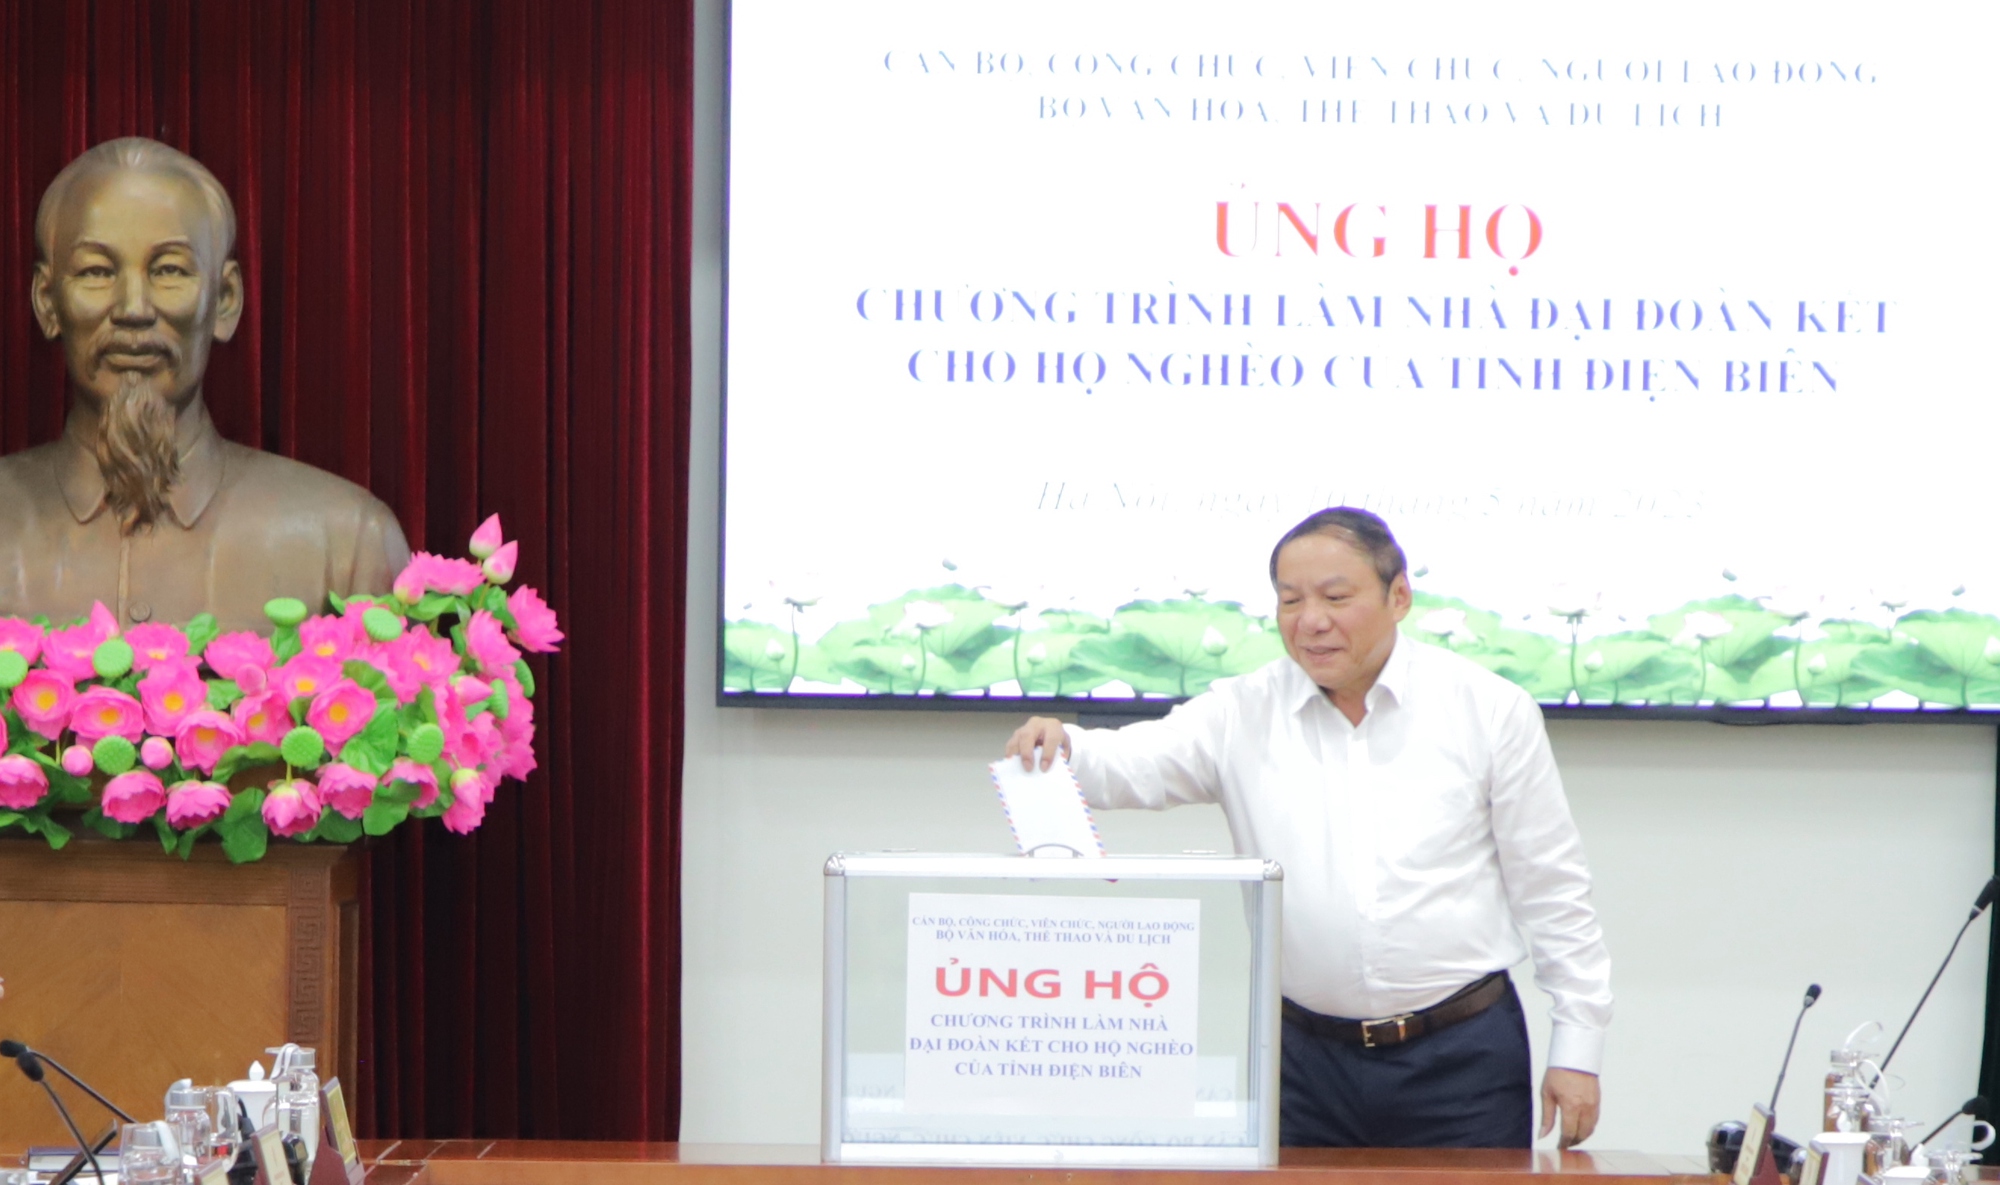 Bộ VHTTDL ủng hộ Chương trình xây nhà đại đoàn kết cho hộ nghèo của tỉnh Điện Biên - Ảnh 3.